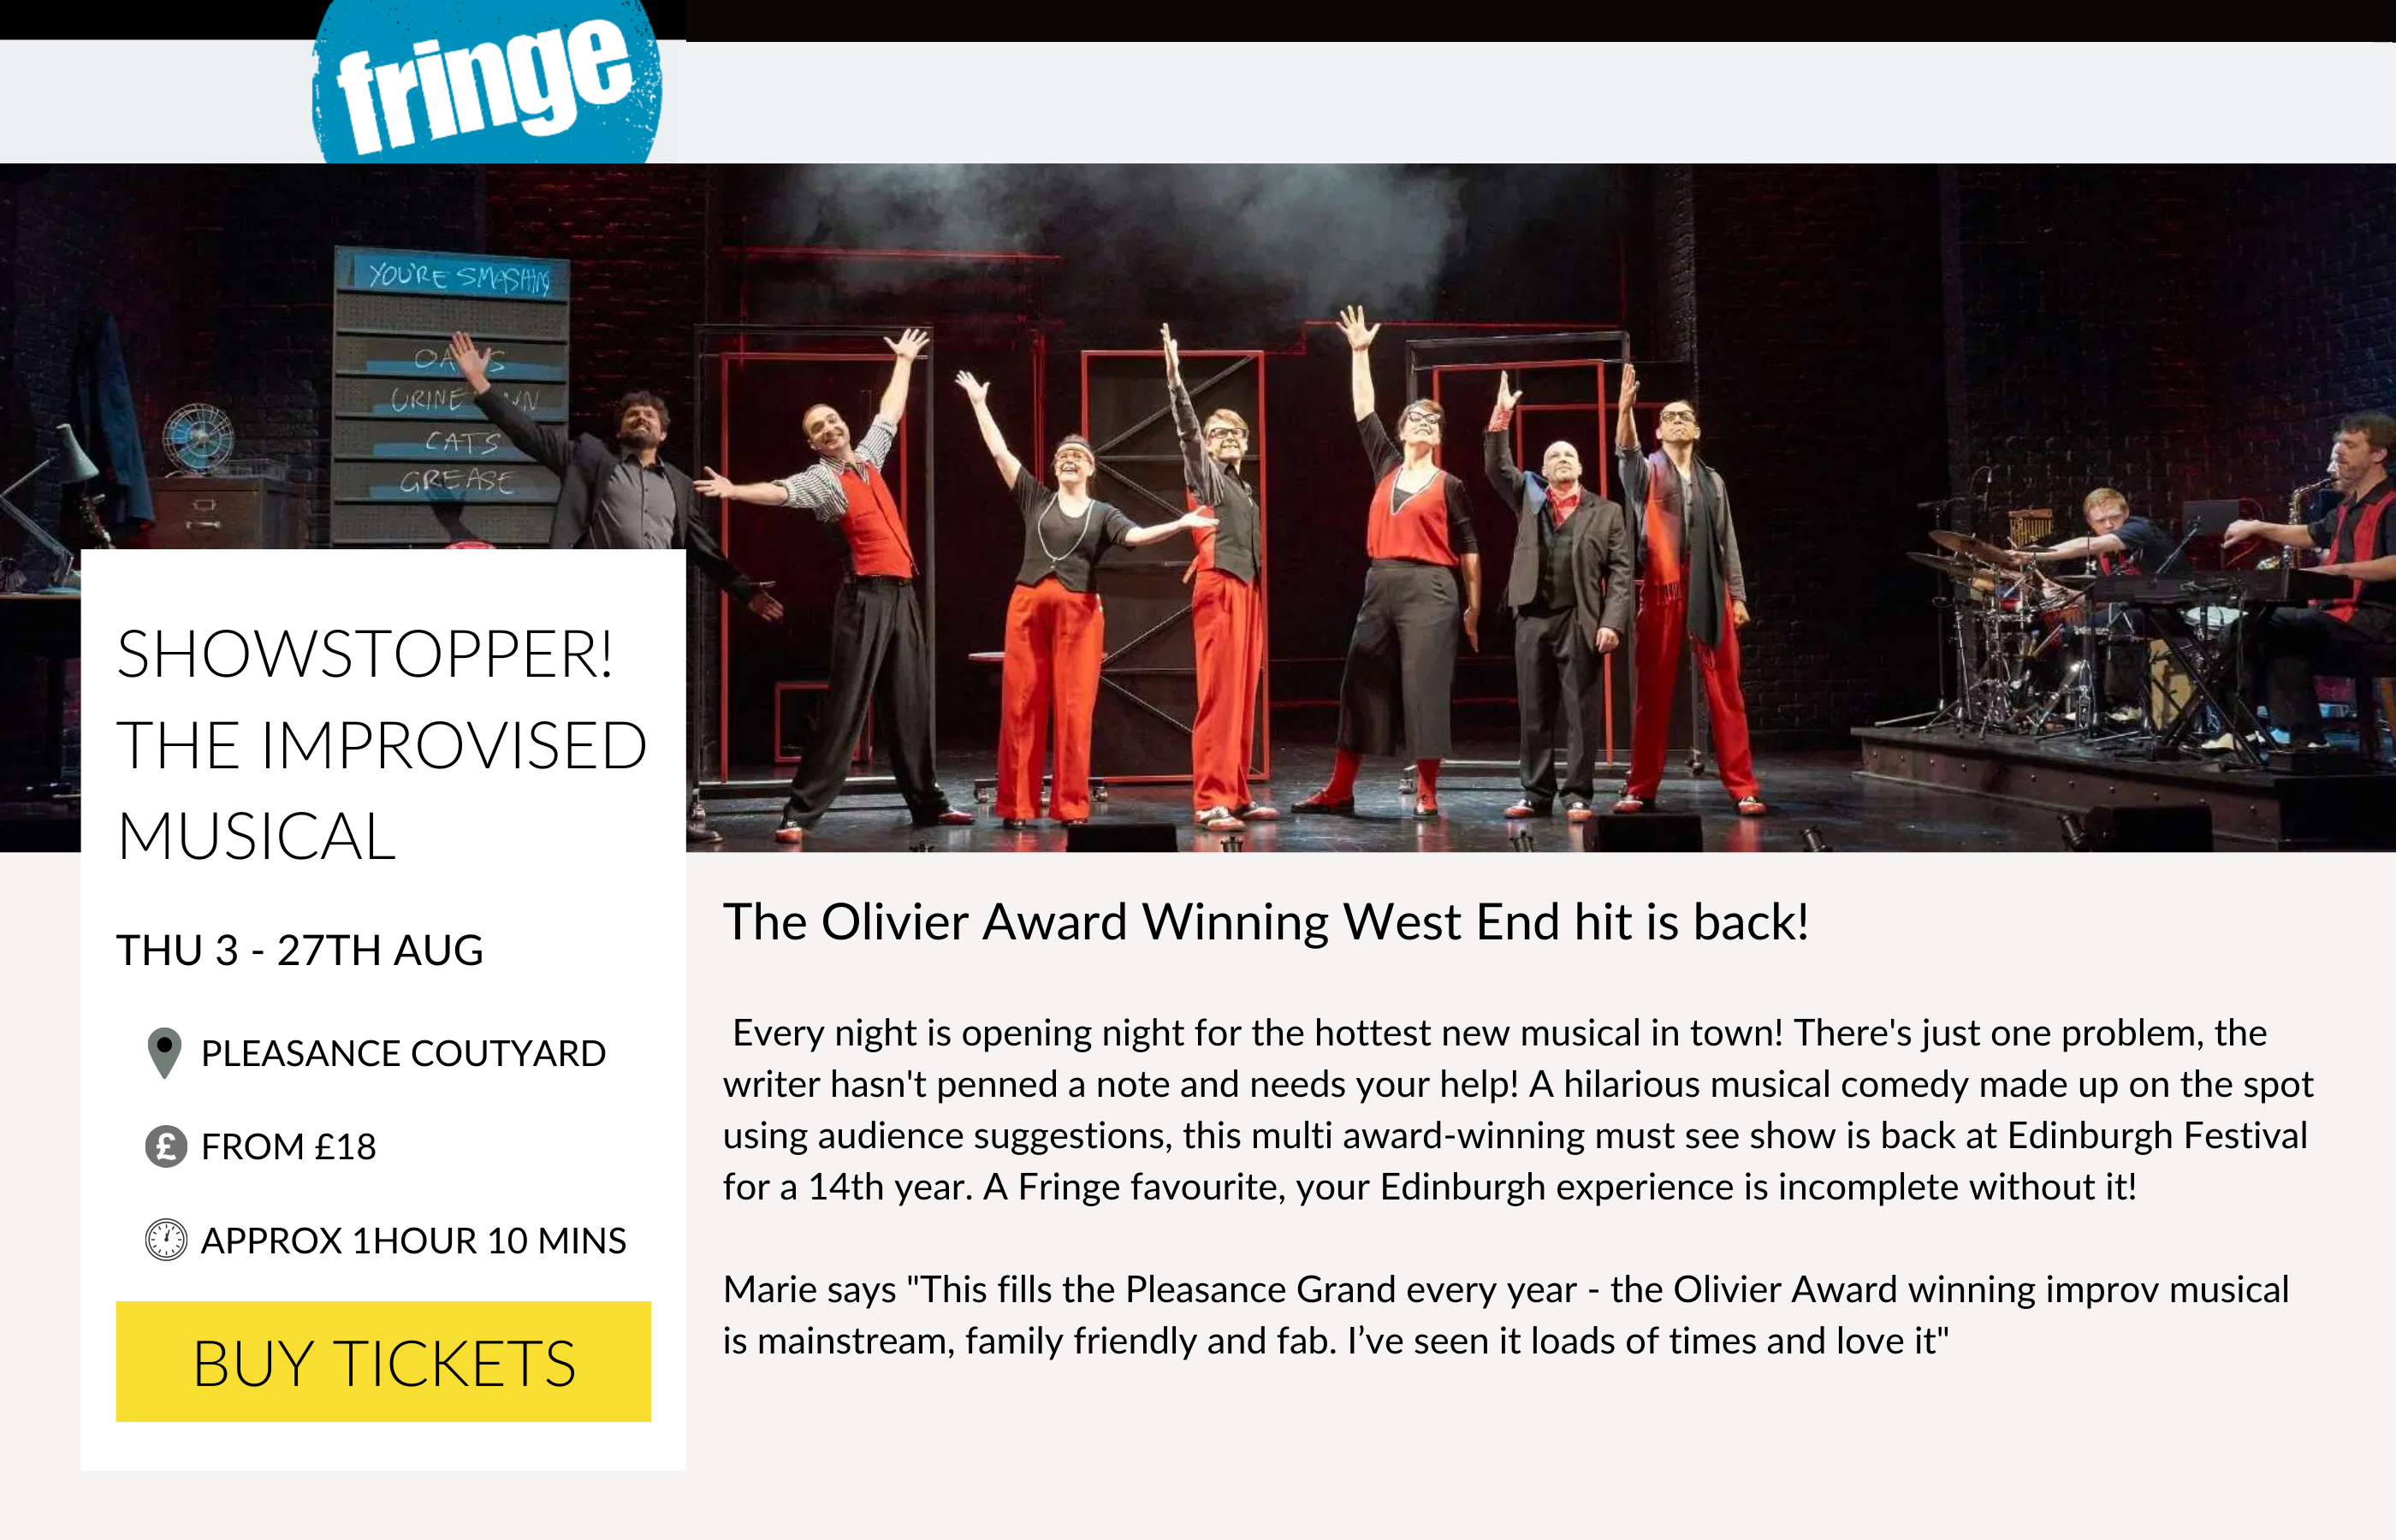 Showstopper - The Improvised Musical, Edinburgh Festival Fringe